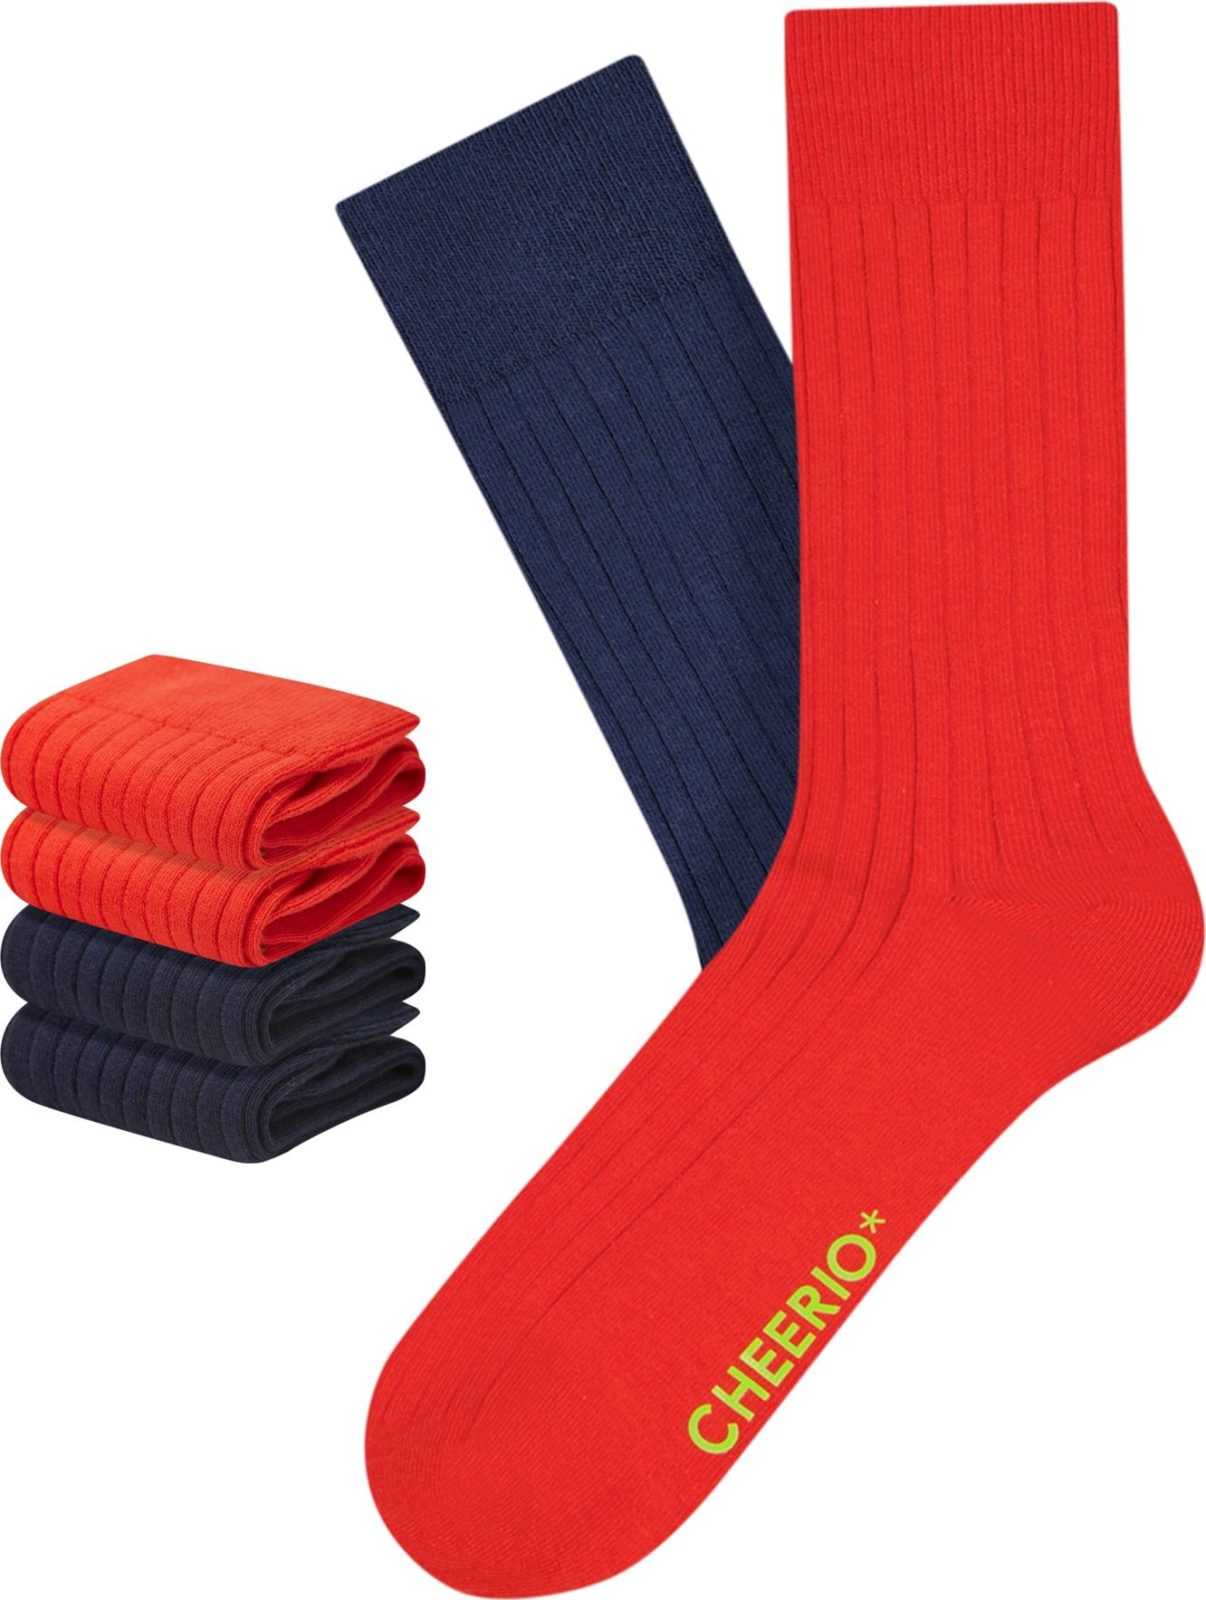 CHEERIO* Ponožky 'TOUGH GUY' tmavě modrá / červená